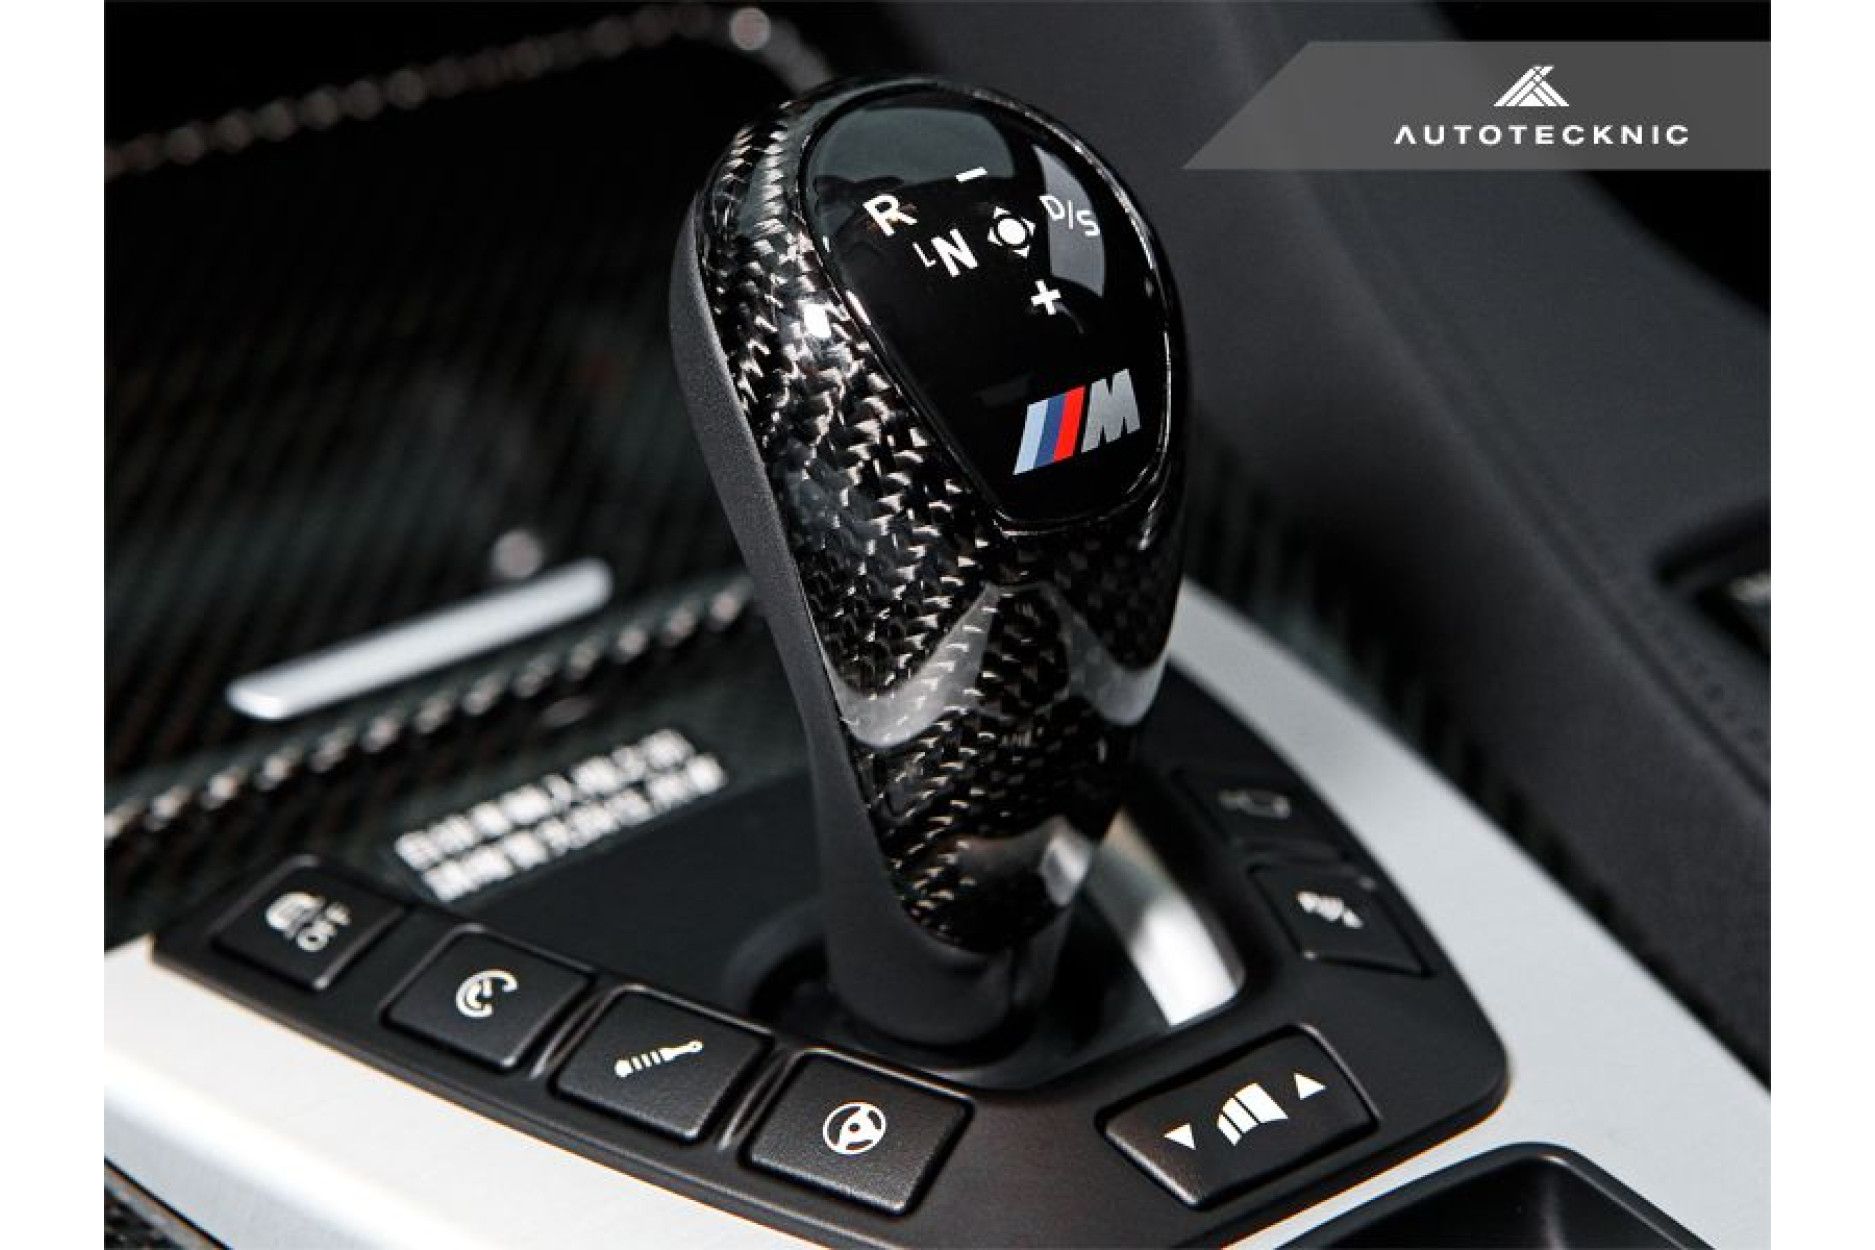 Autotecknic Carbon Schaltknauf Abdeckung für BMW F87 M2 und M2 Comp